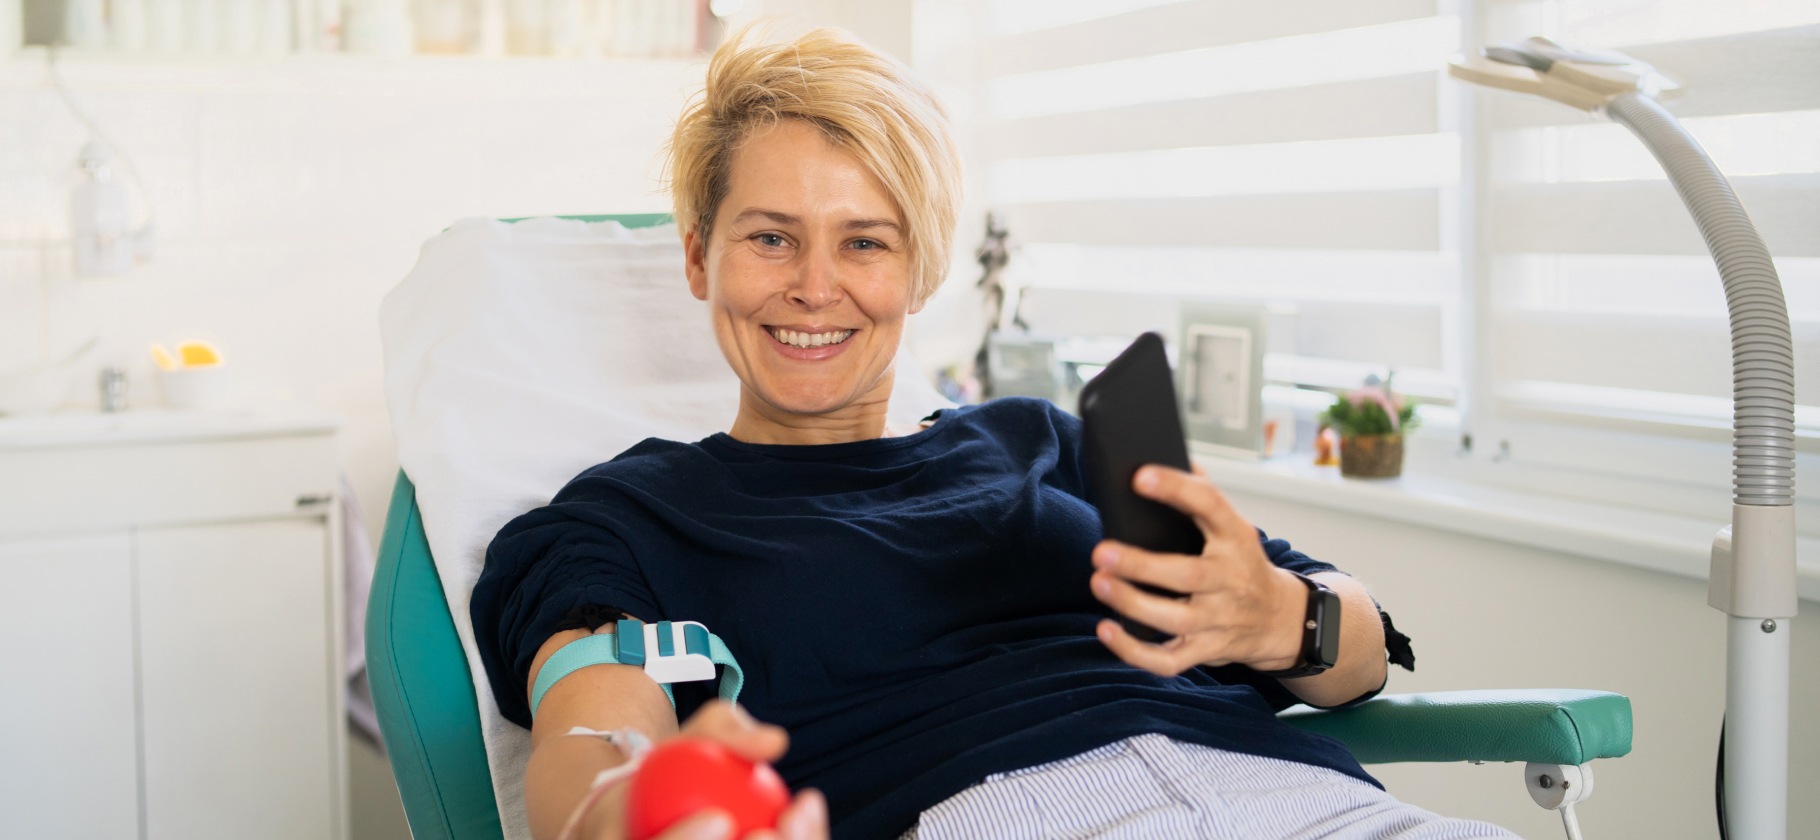 «Ваша кровь спасла жизнь»: 4 истории о том, зачем стано­виться донорами